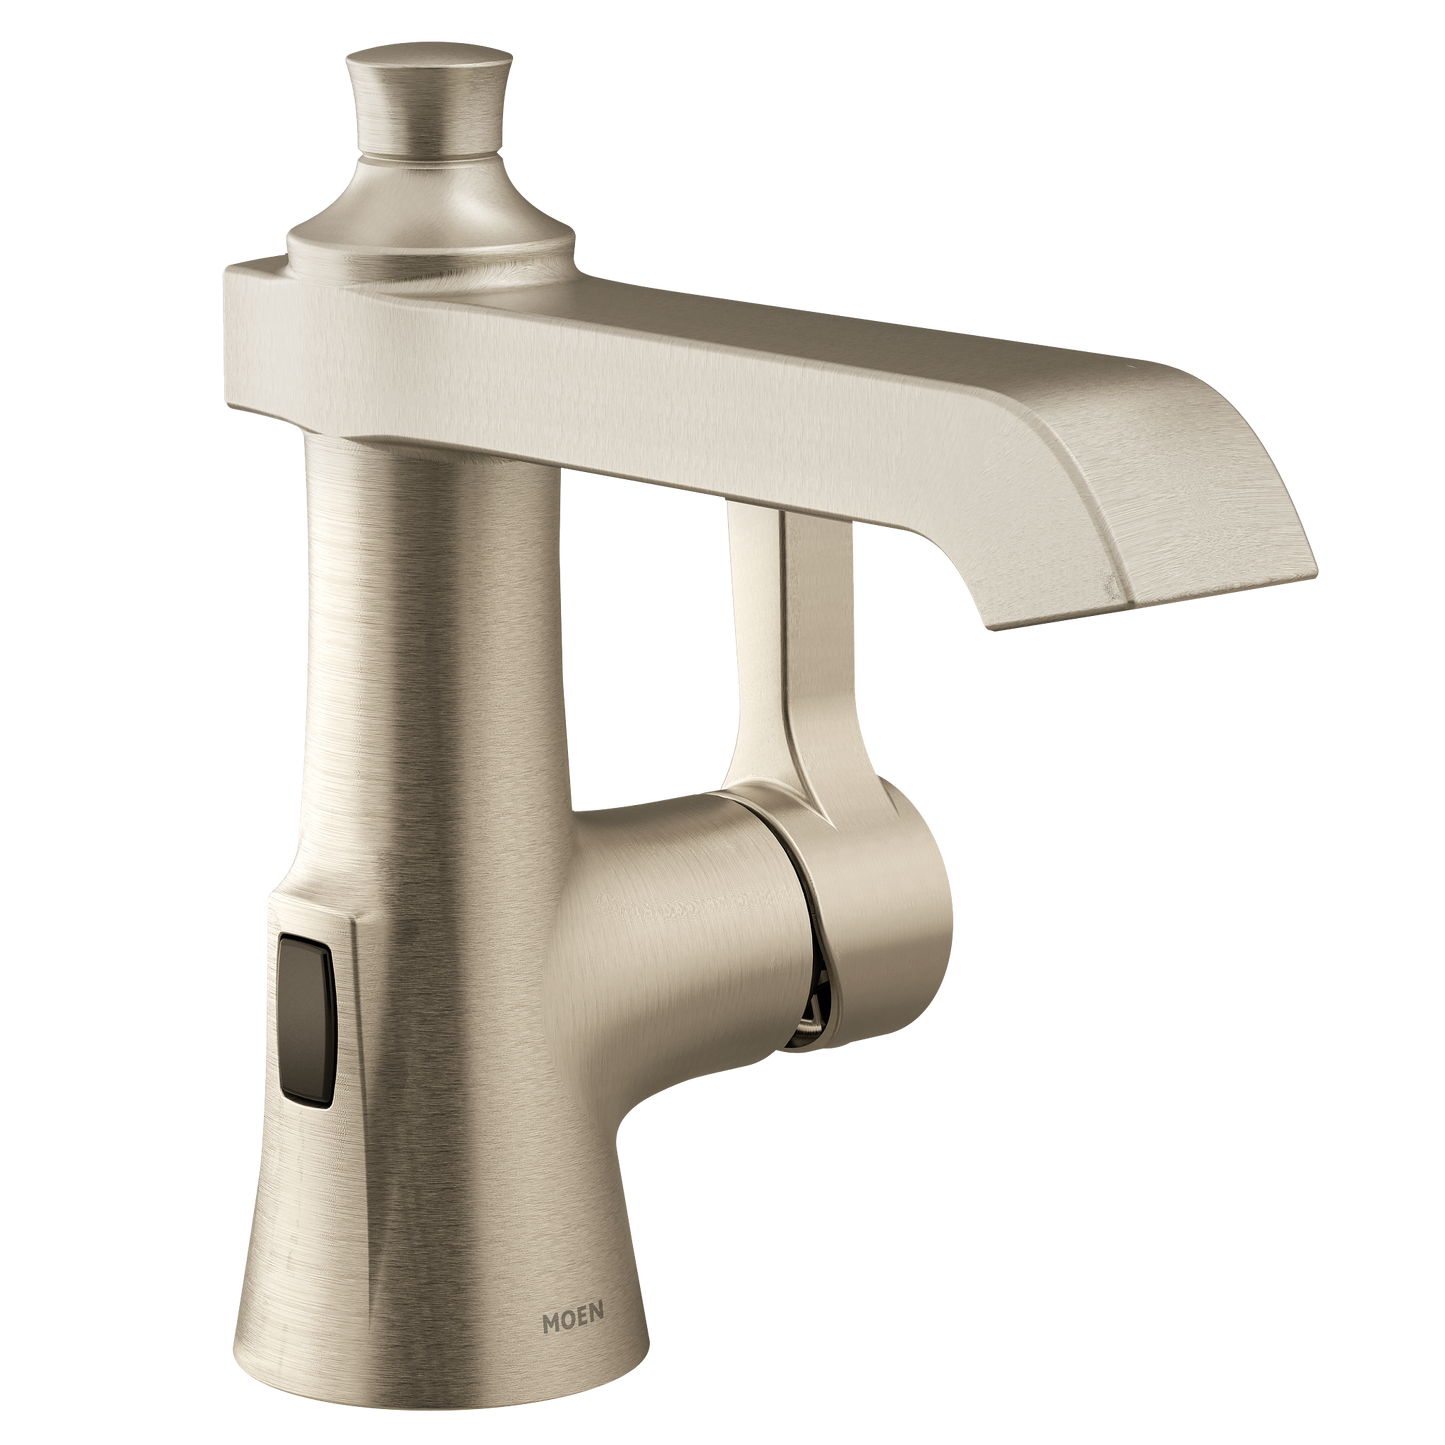 Flara Chrome one-handle high arc bathroom faucet